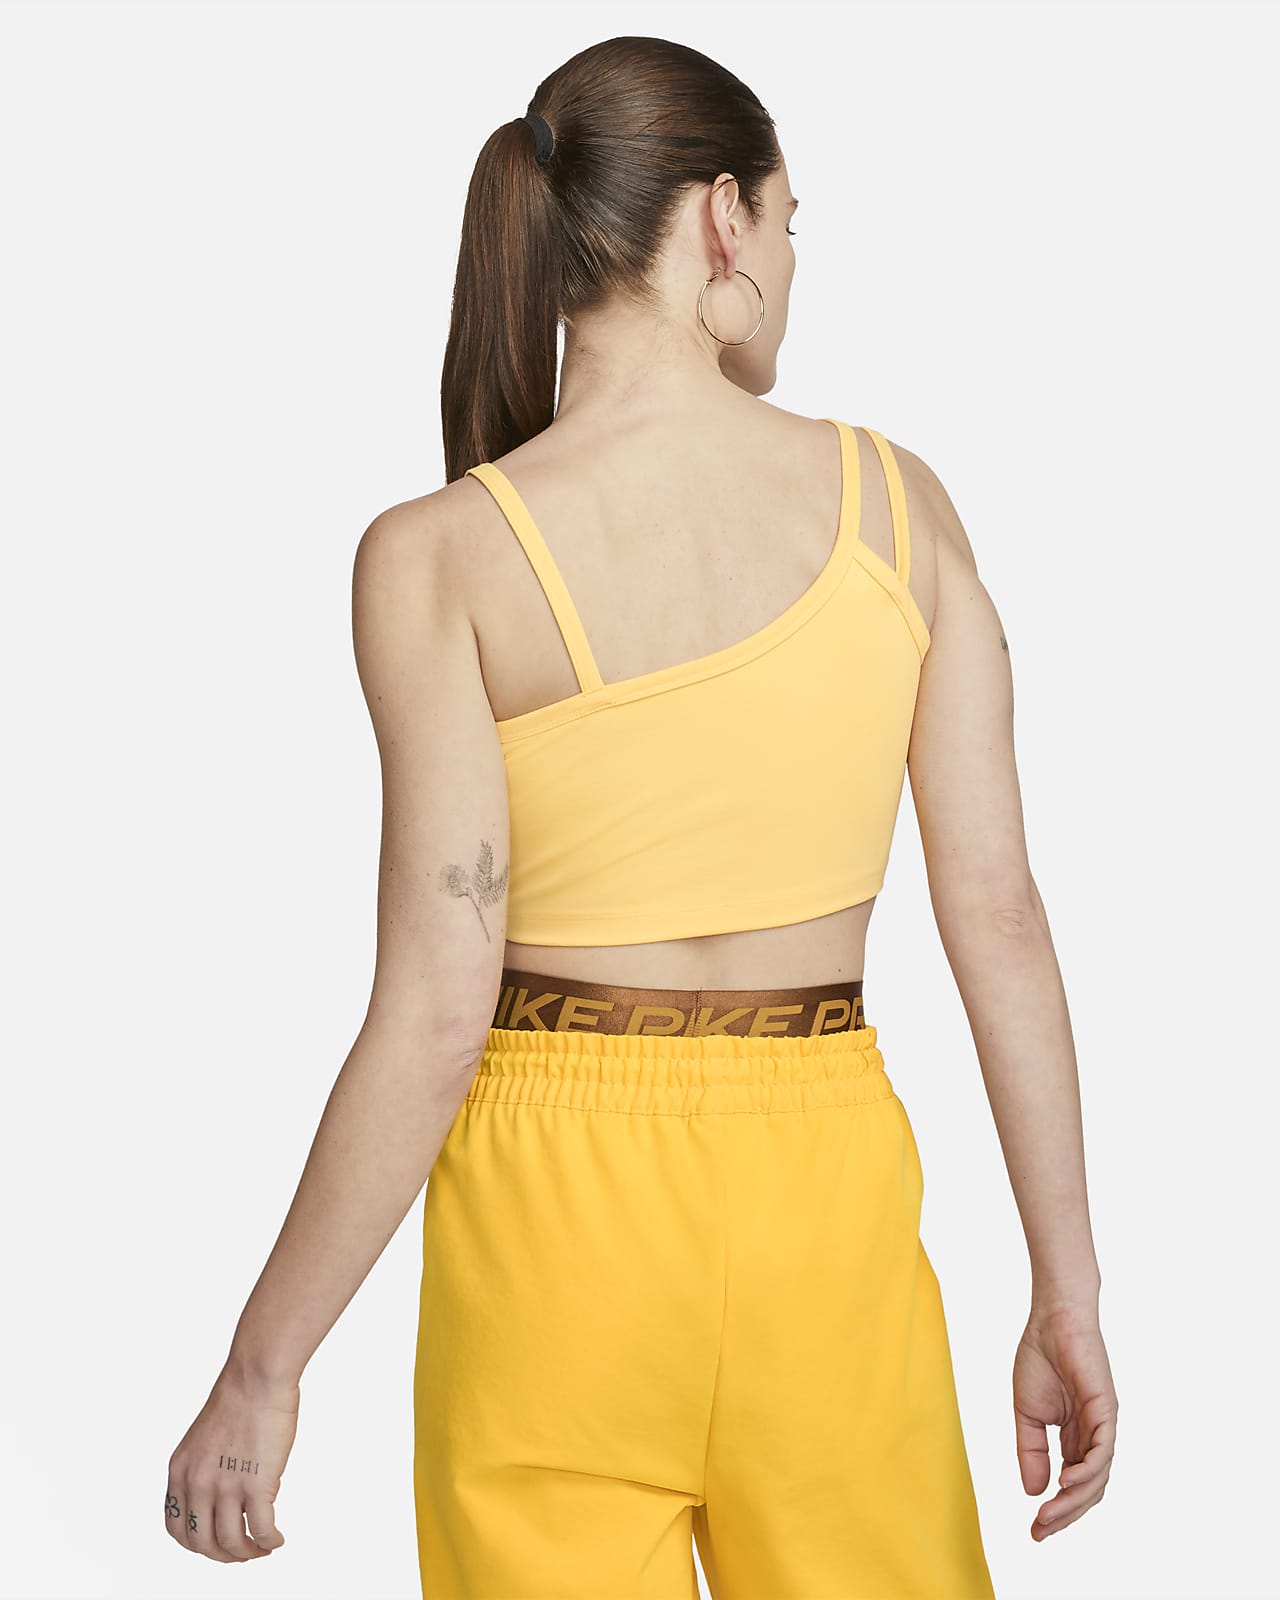 Nike Sportswear Everyday Modern Women's Asymmetrical Tank Dress.